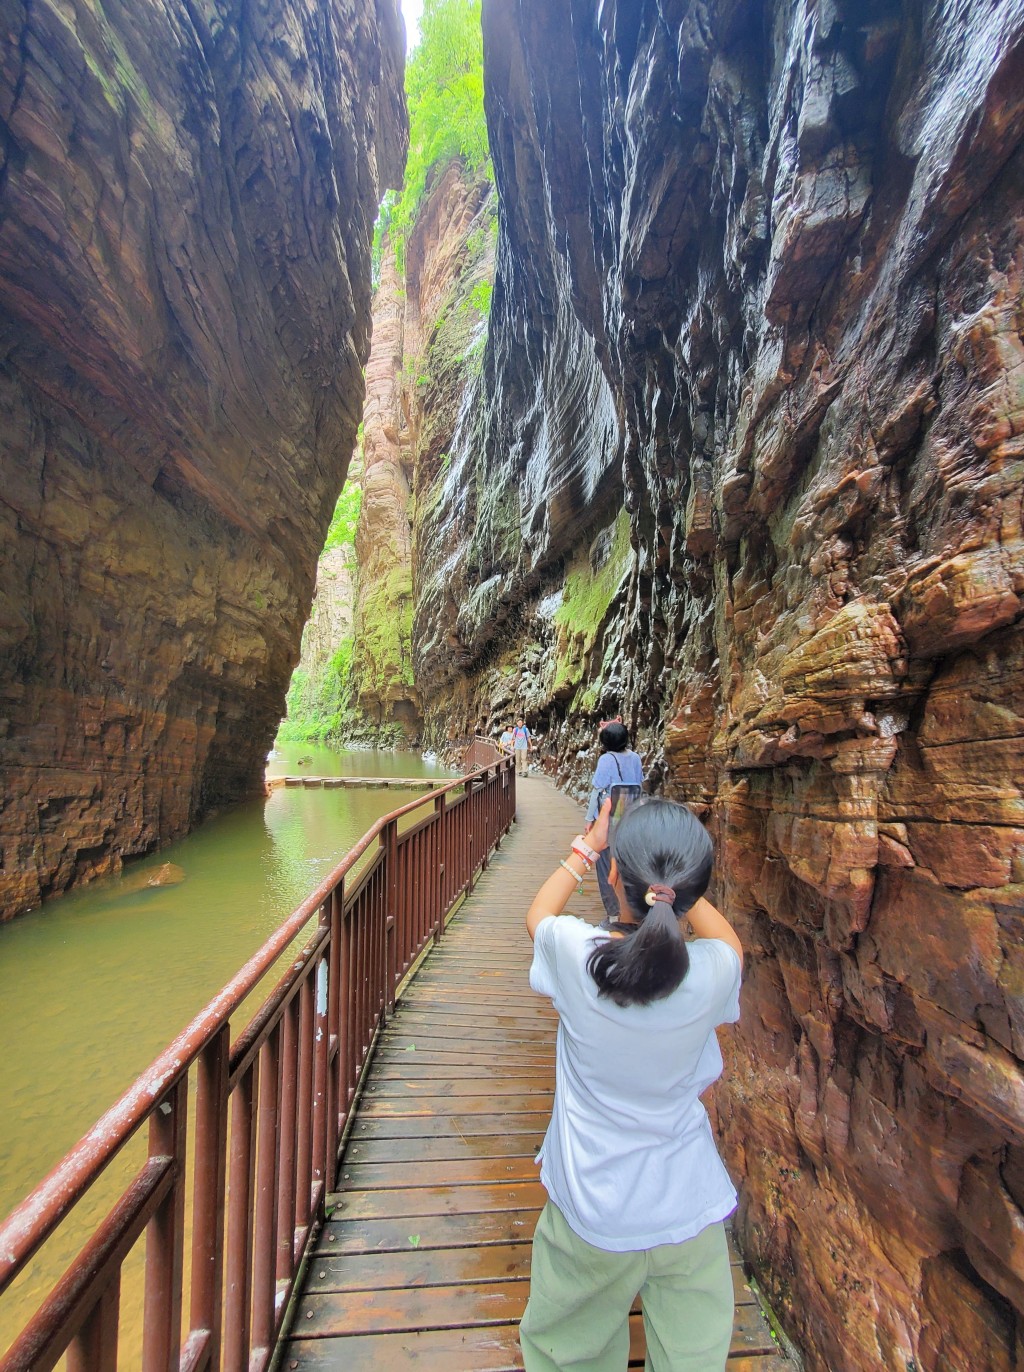 龙潭大峡谷景区景色壮丽，吸引许多游客。微博